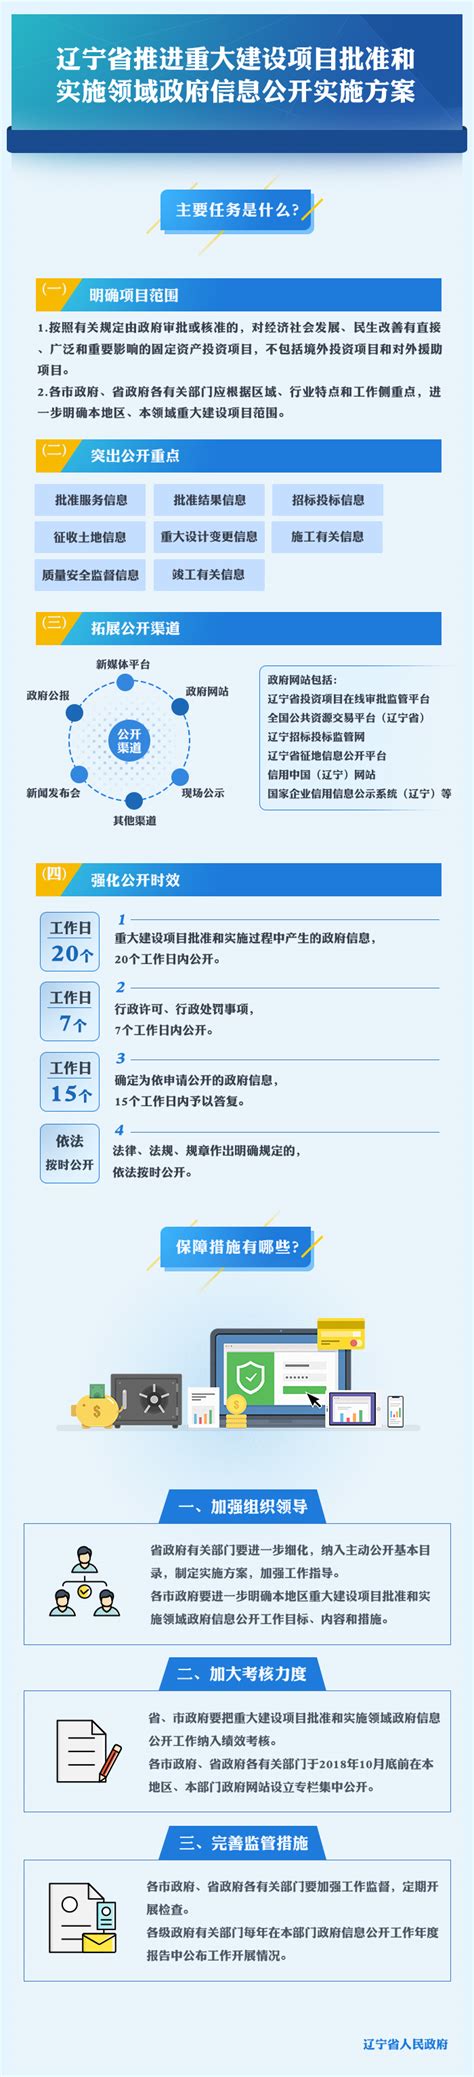 辽宁国家企业信用公示信息系统(辽宁)信用中国网站